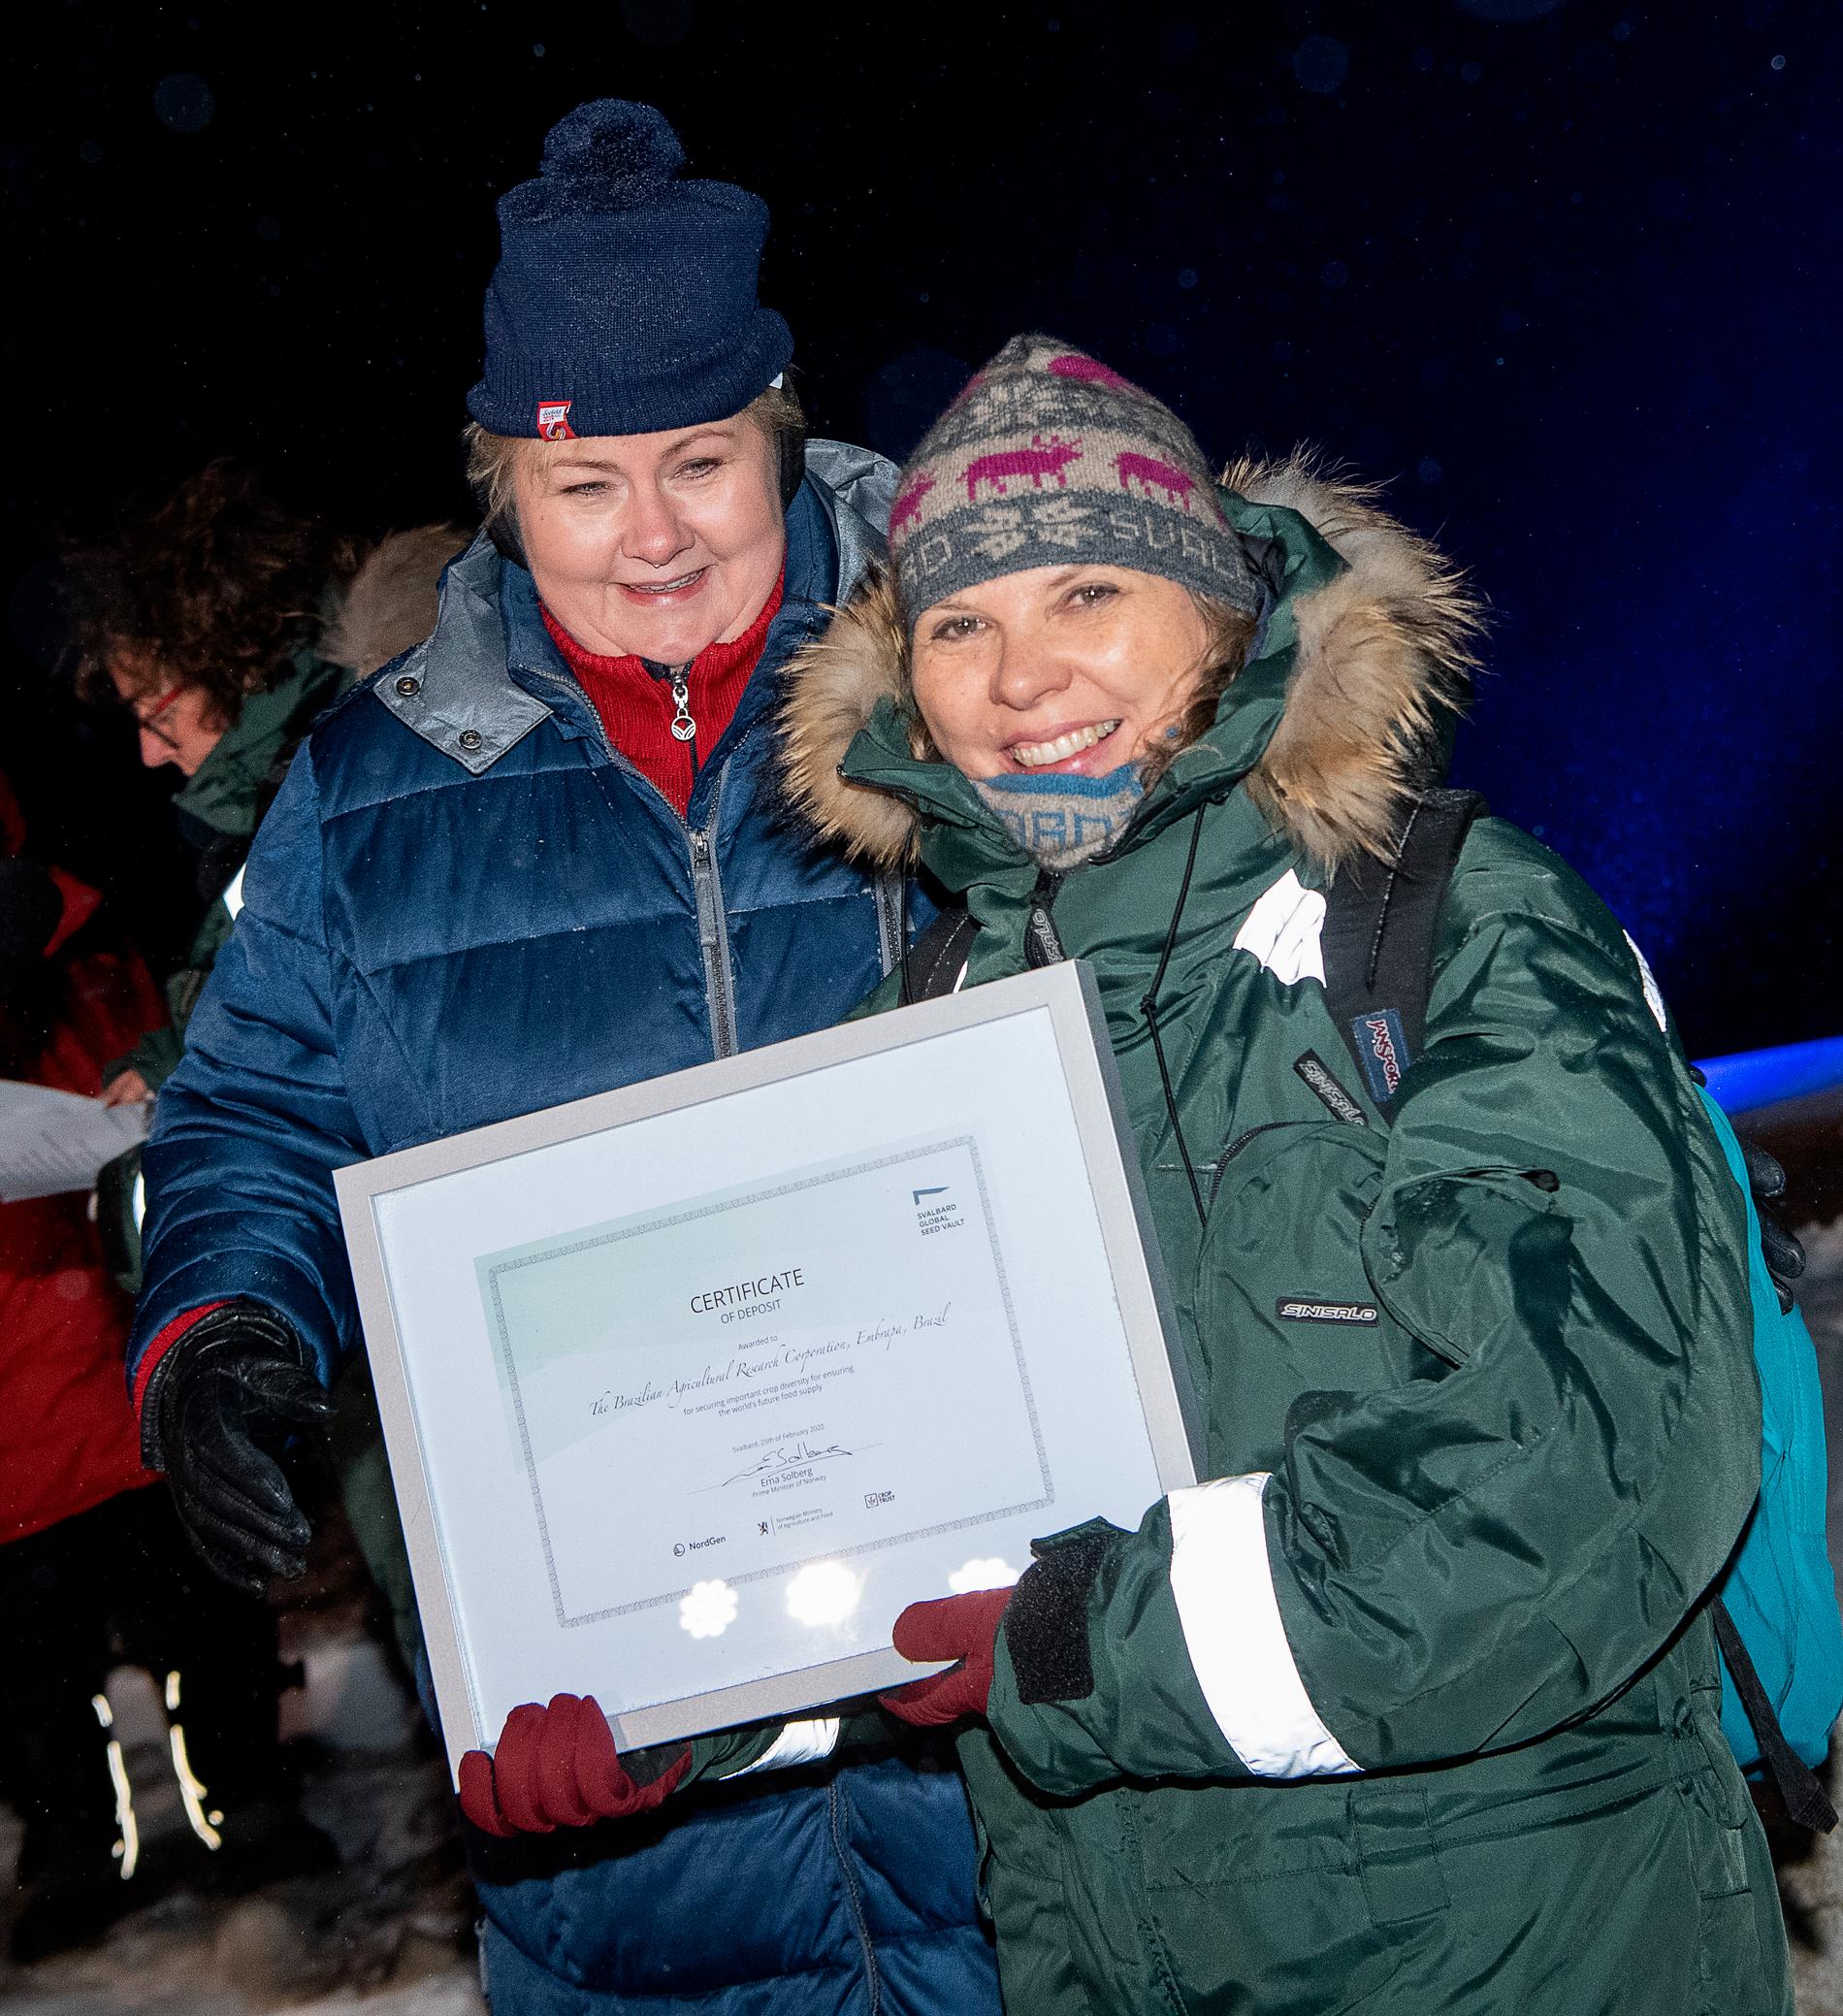 Norges statsminister Erna Solberg delar ut certifikat till Rosa Lía Barbieri från den brasilianska genbanken Embrapa vid tisdagskvällens frödeponeringsceremoni utanför Svalbards globala frövalv i Longyearbyen.